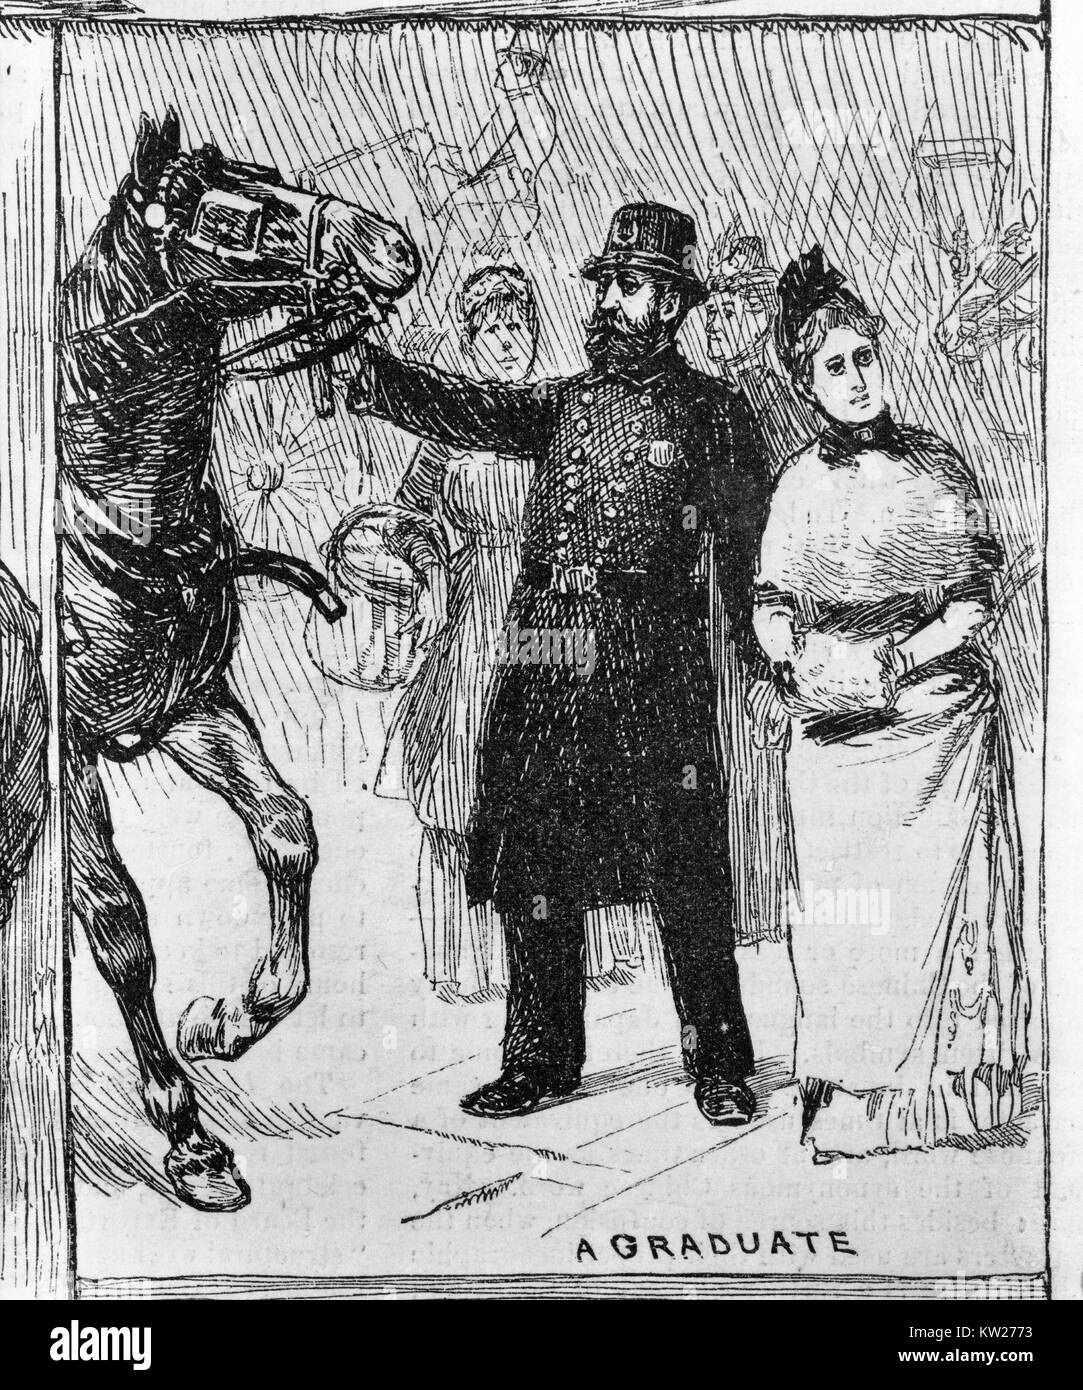 Öffentlichen Dienst Prüfung für die New Yorker Polizei. Ein Absolvent - Polizist die Zügel des Pferdes. 1886 Stockfoto